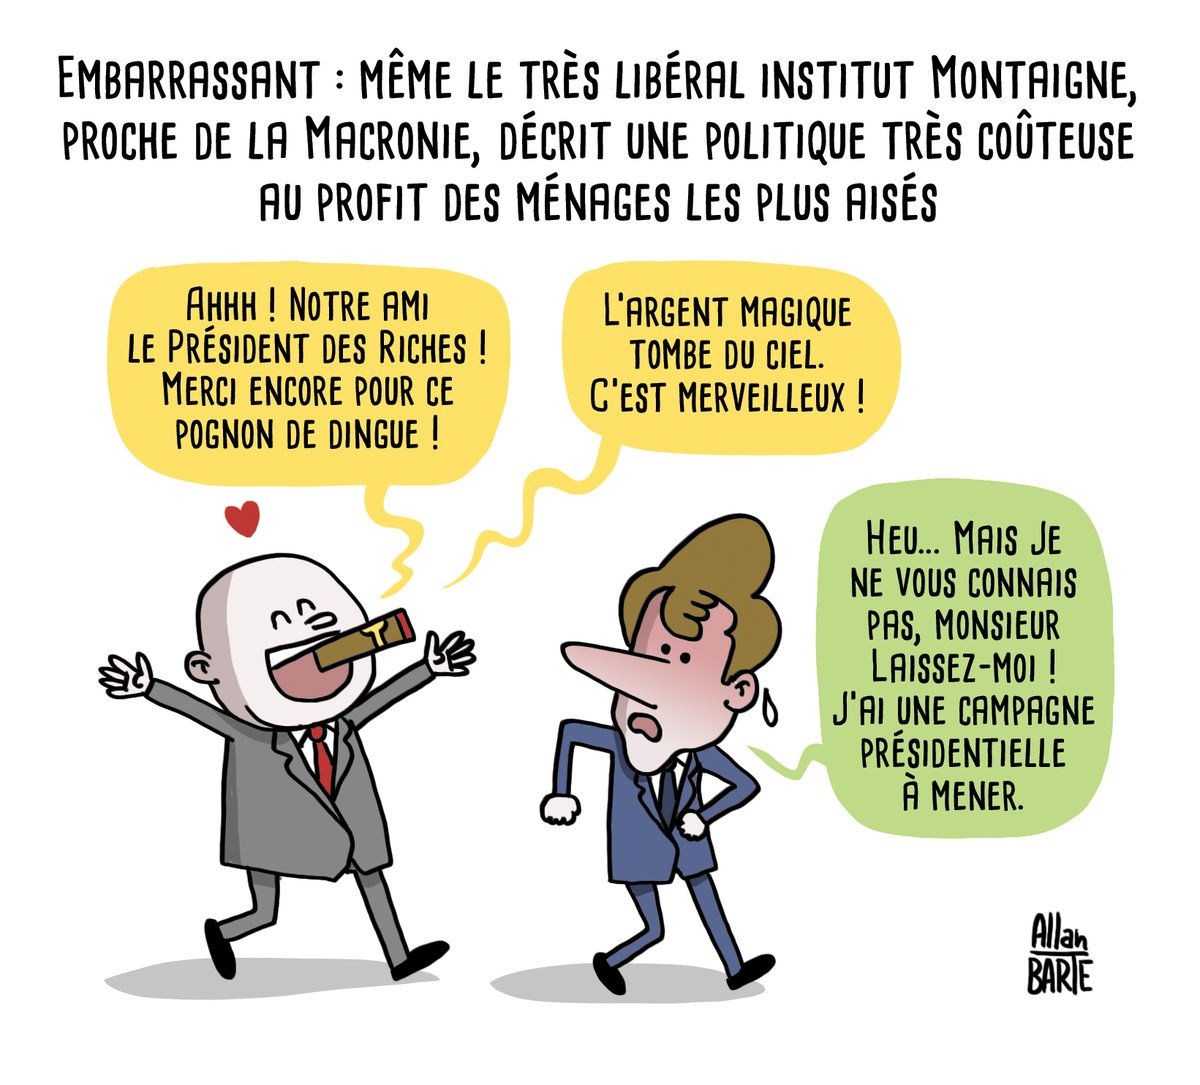 Macron, définitivement le #PrésidentDesRiches
 #Fiscalité #InstitutMontaigne #Montaigne #Macron

▶ Source : liberation.fr/economie/presi…

▶ Si vous avez un pognon de dingue, n'hésitez pas à faire ruisseler ! 😃
fr.tipeee.com/allan-barte 😘